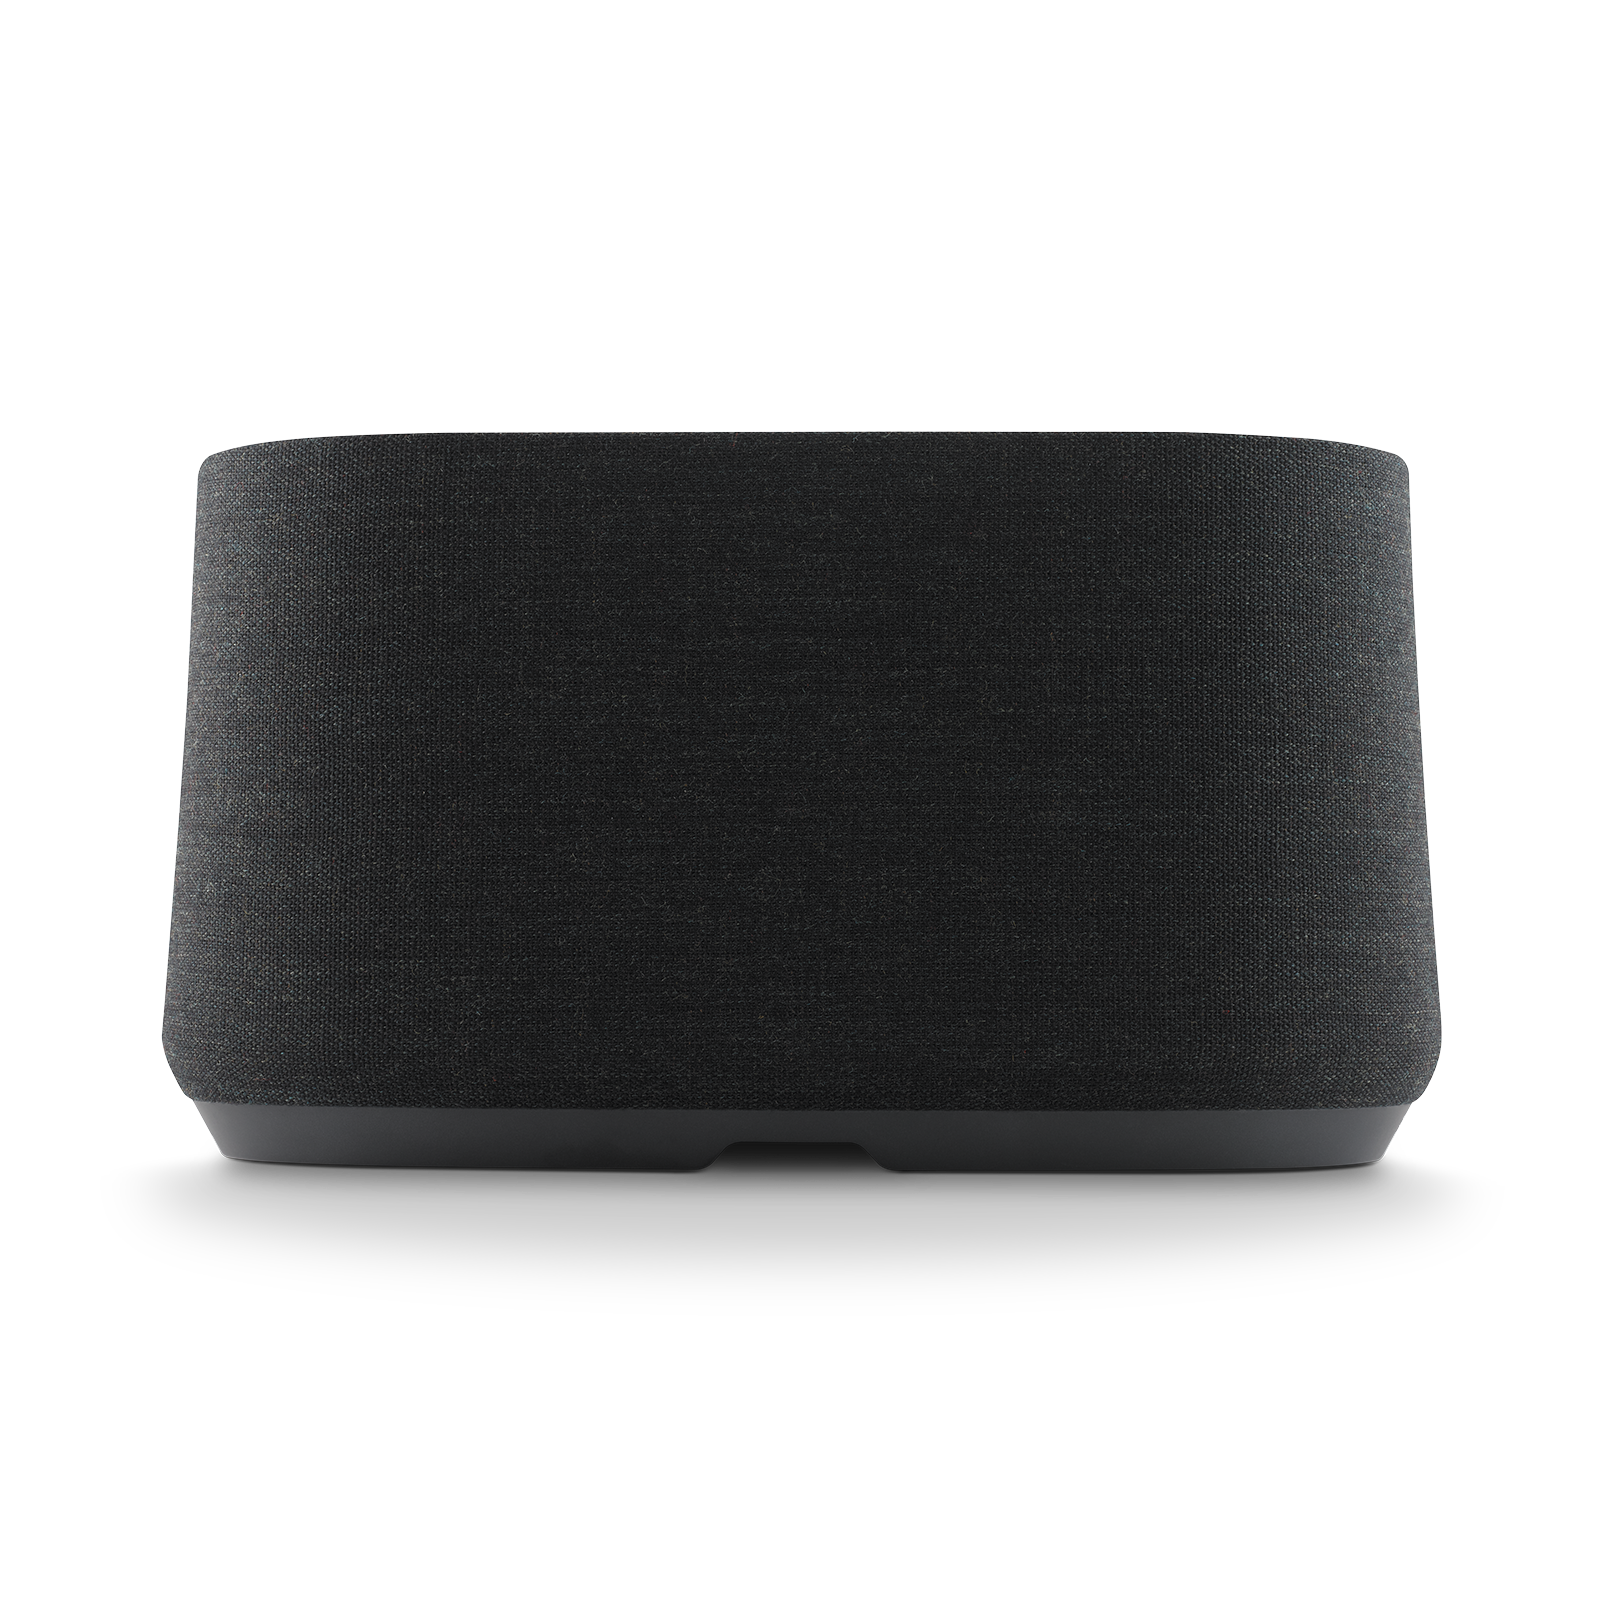 Harman Kardon Citation 500 - Black - Large Tabletop Smart Home Loudspeaker System - Back